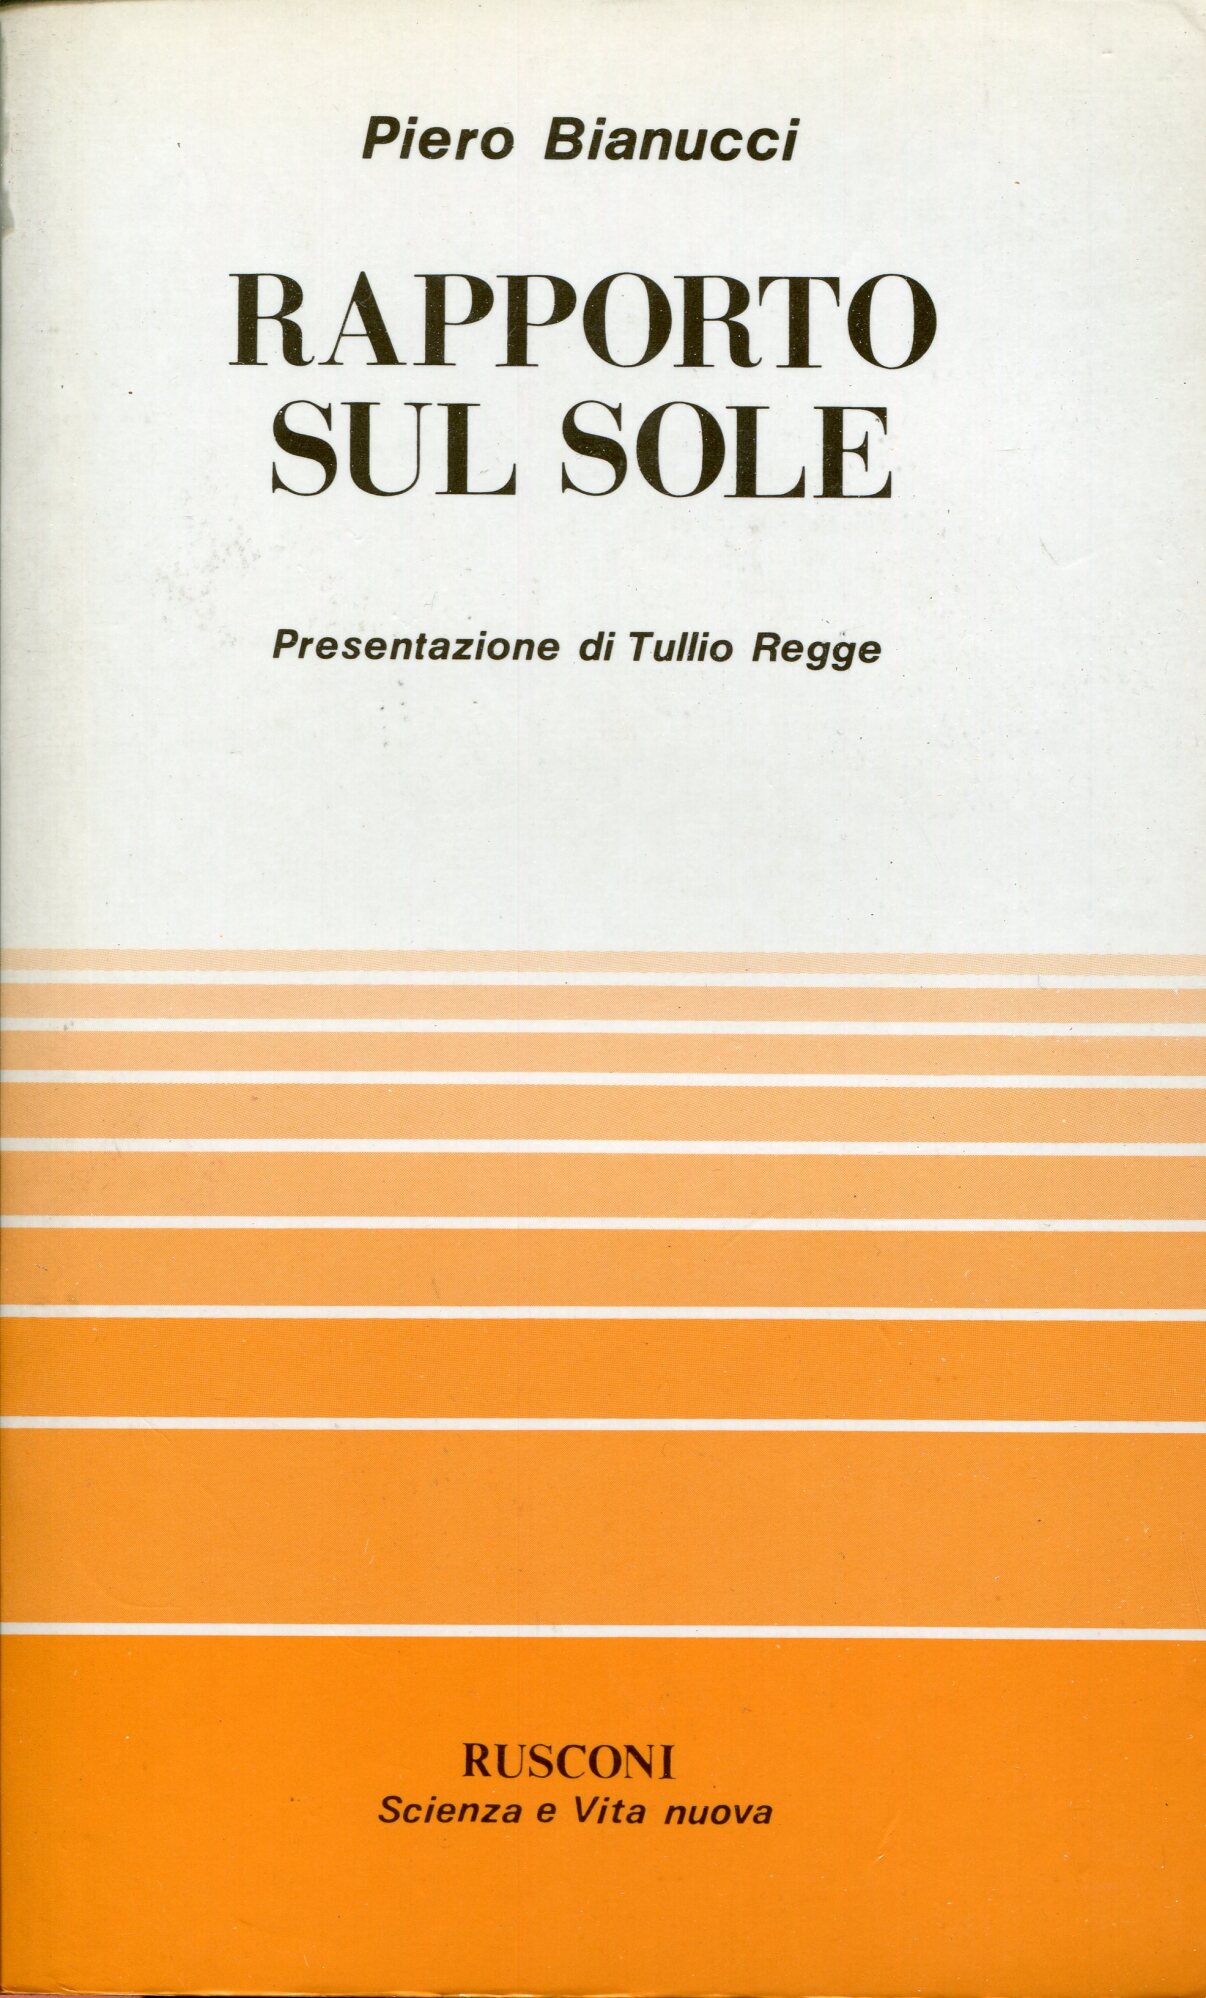 Rapporto sul sole, presentazione di Tullio Regge